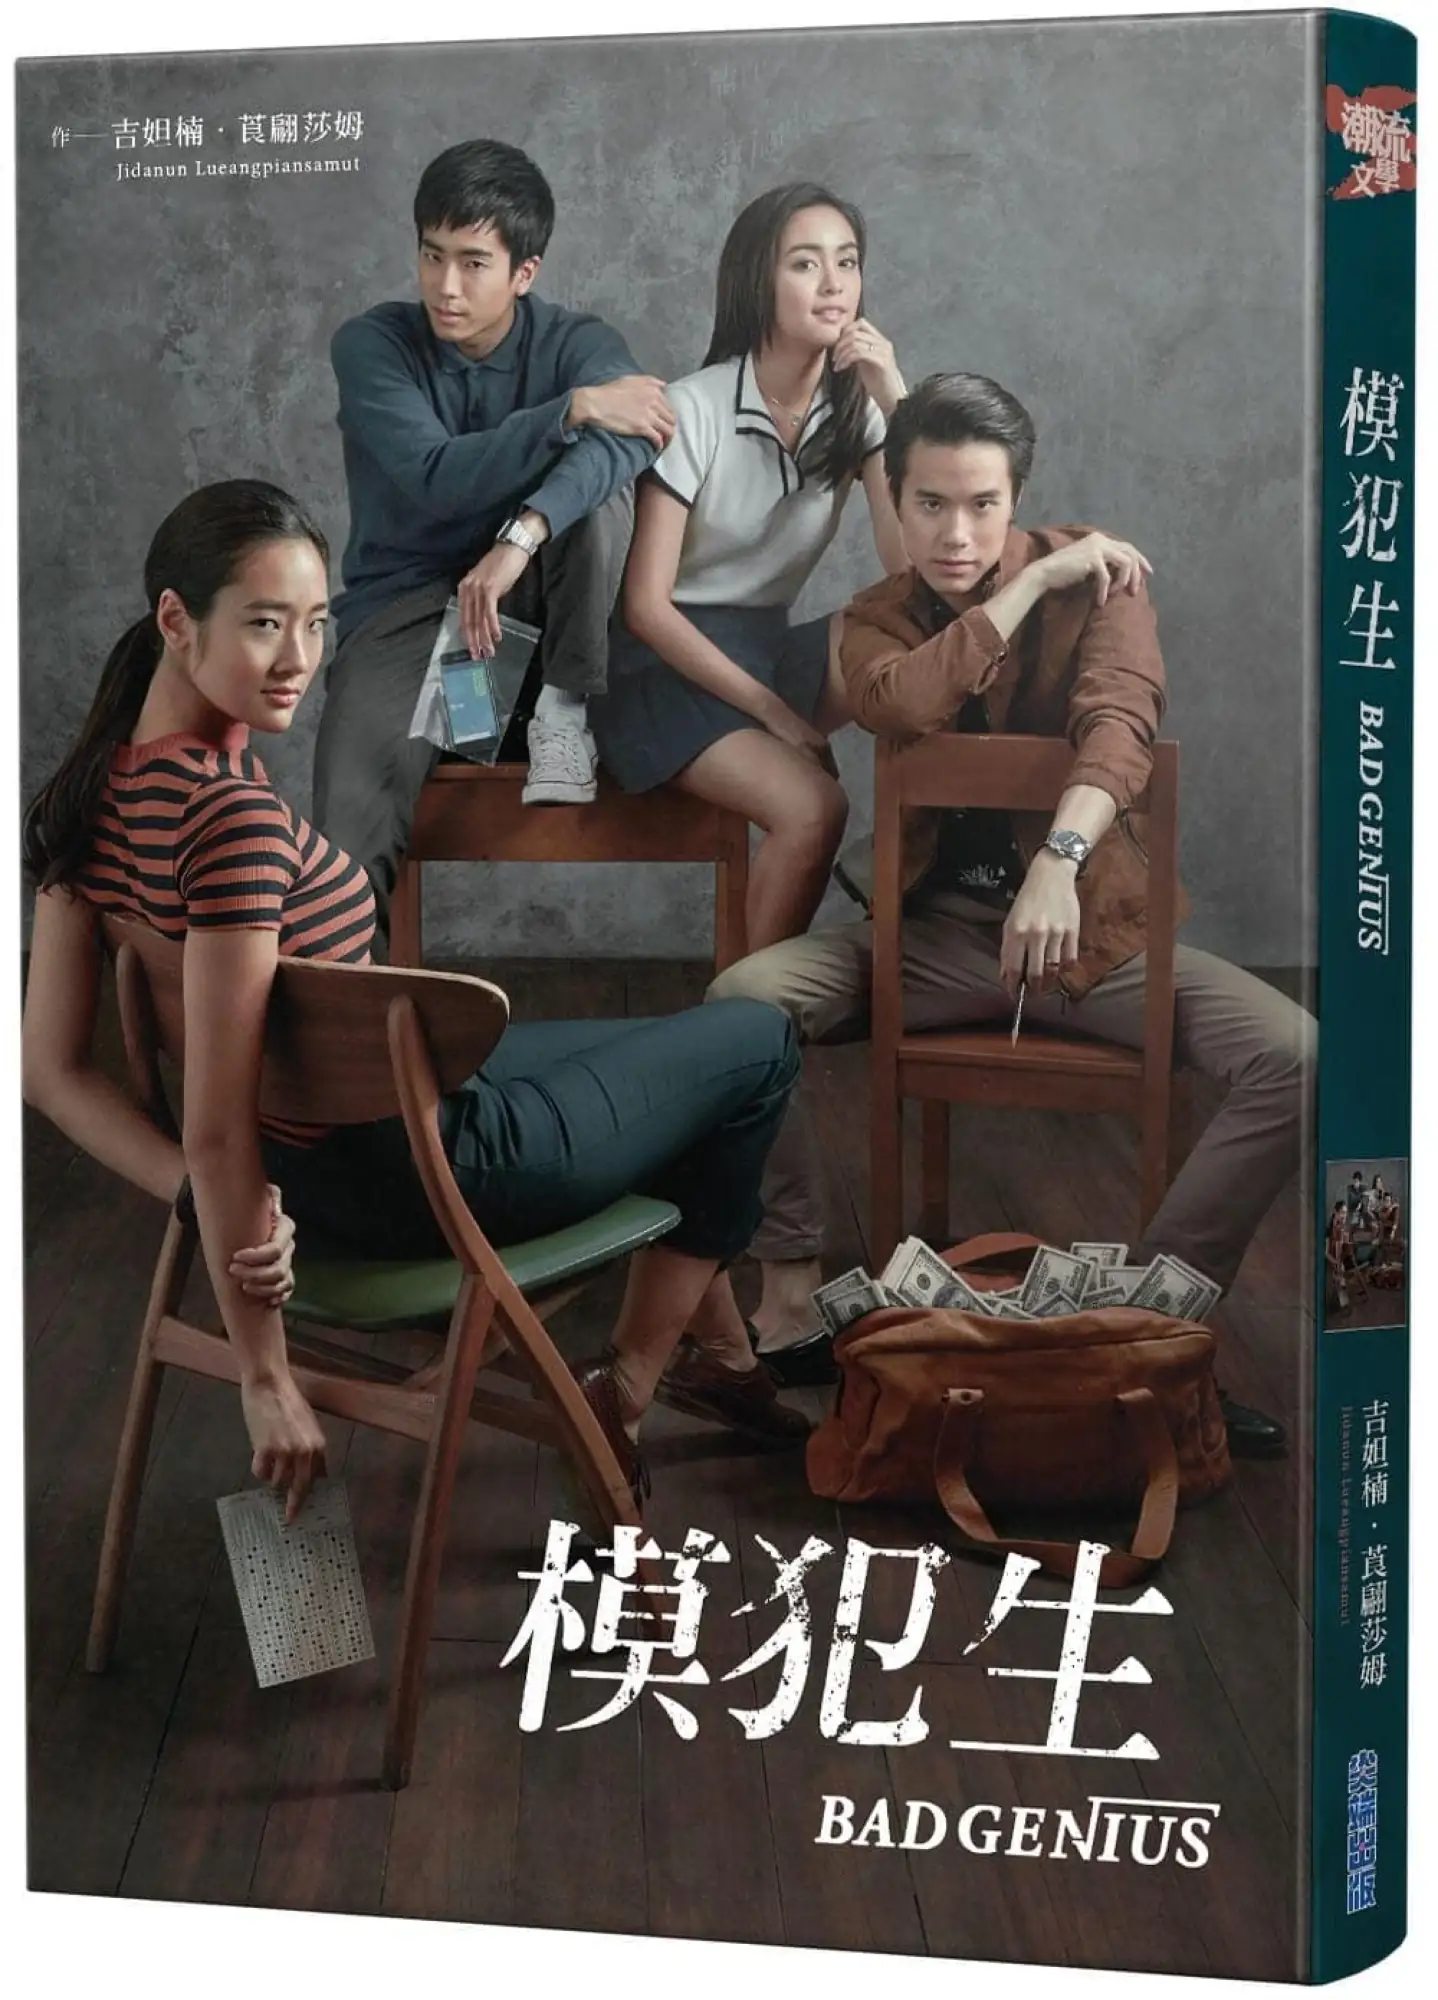 泰國電影《模犯生》將推出《模犯生》影集版，並且小說出了繁體中文版（圖片來源：博客來）